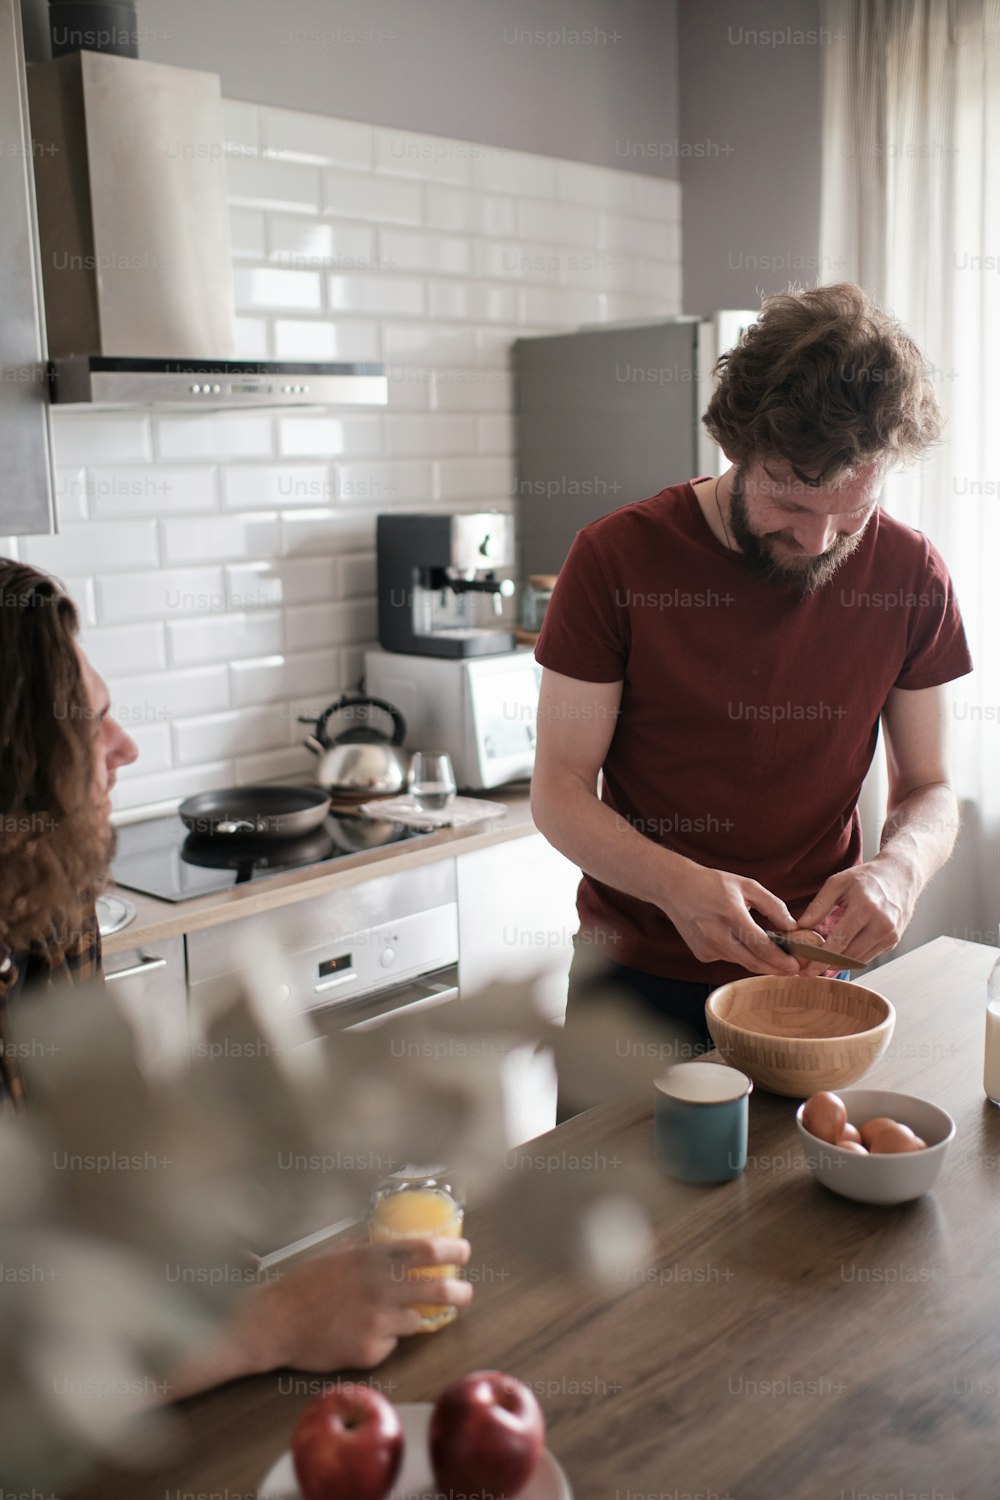 台所で会話をしている2人の男性の肖像画で、1人が朝食を作っている